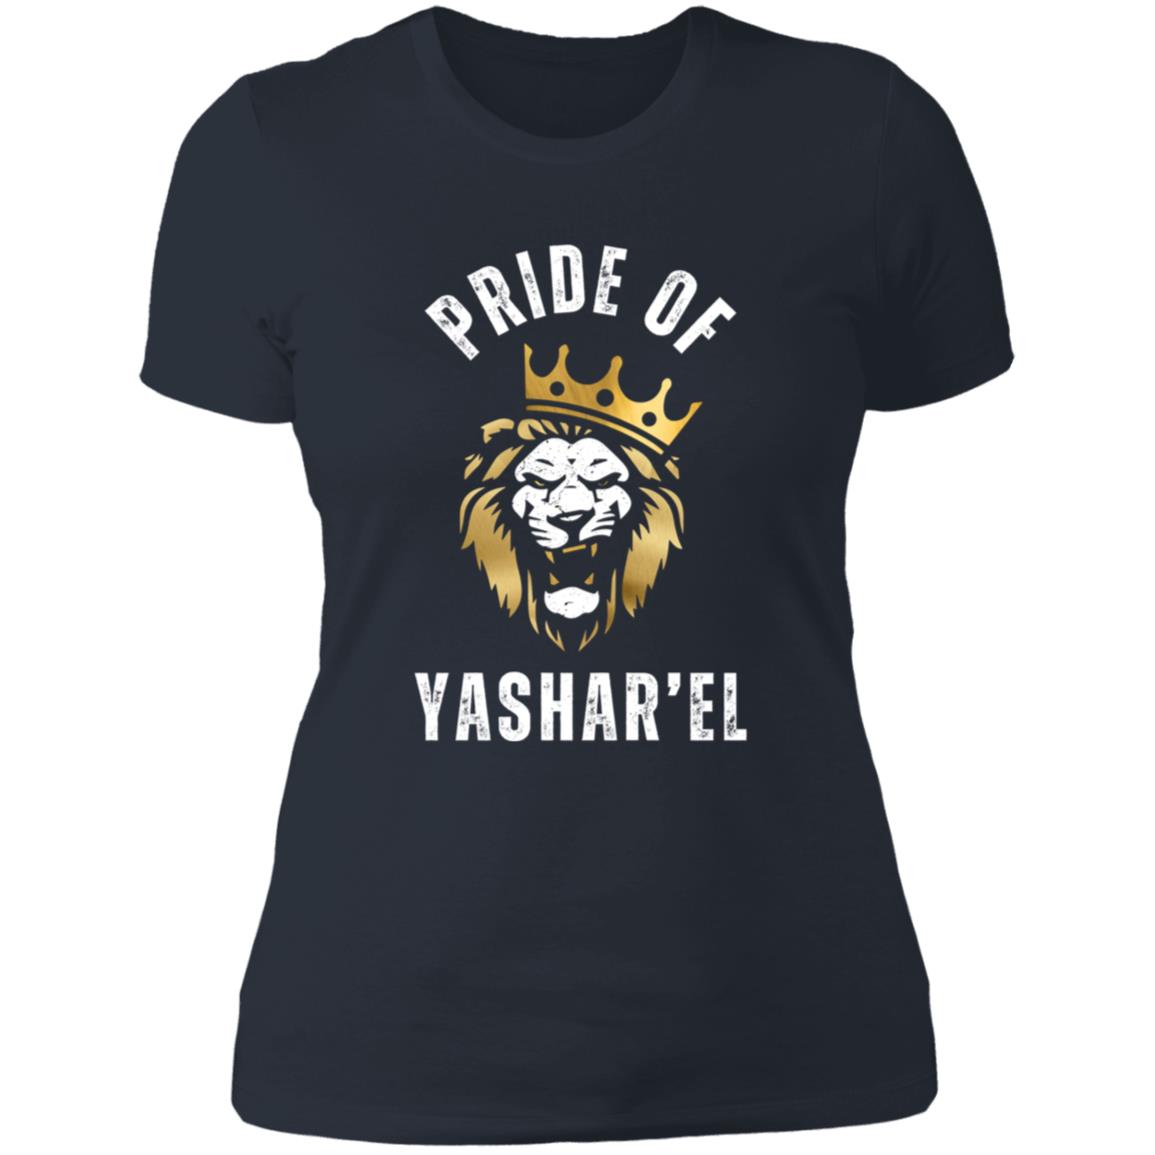 Pride of YASHAR'EL Ladies' Slim Fit T-shirt